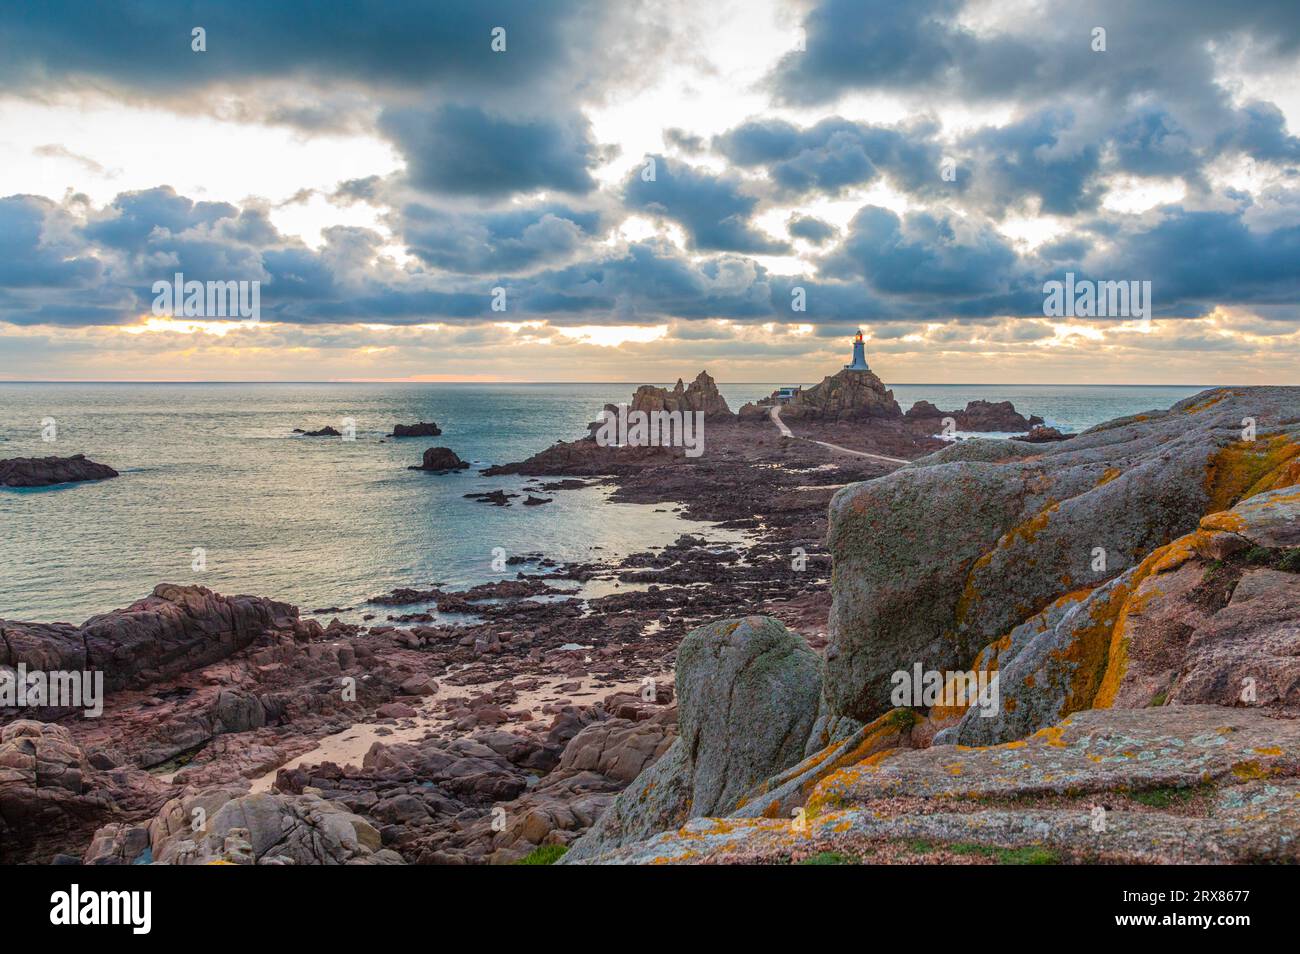 Route vers le phare de la Corbière au fond de la mer à marée basse avec falaise et coucher de soleil, bailliage de Jersey, îles Anglo-Normandes, Grande-Bretagne Banque D'Images